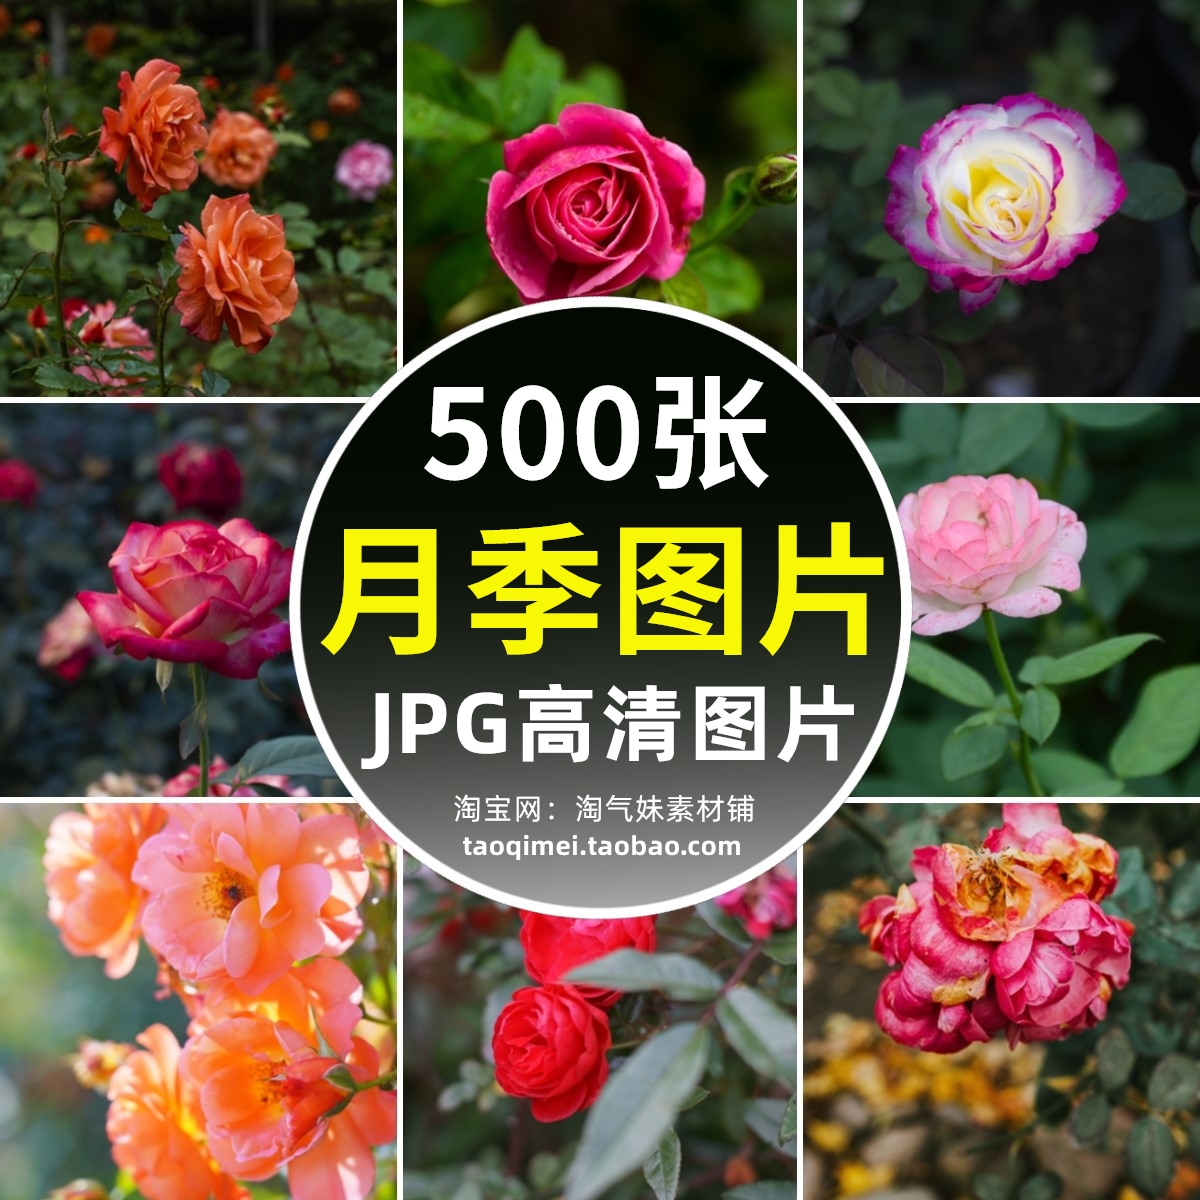 高清JPG月季图片月季花观赏花红黄粉花朵蔷薇科花卉植物摄影素材